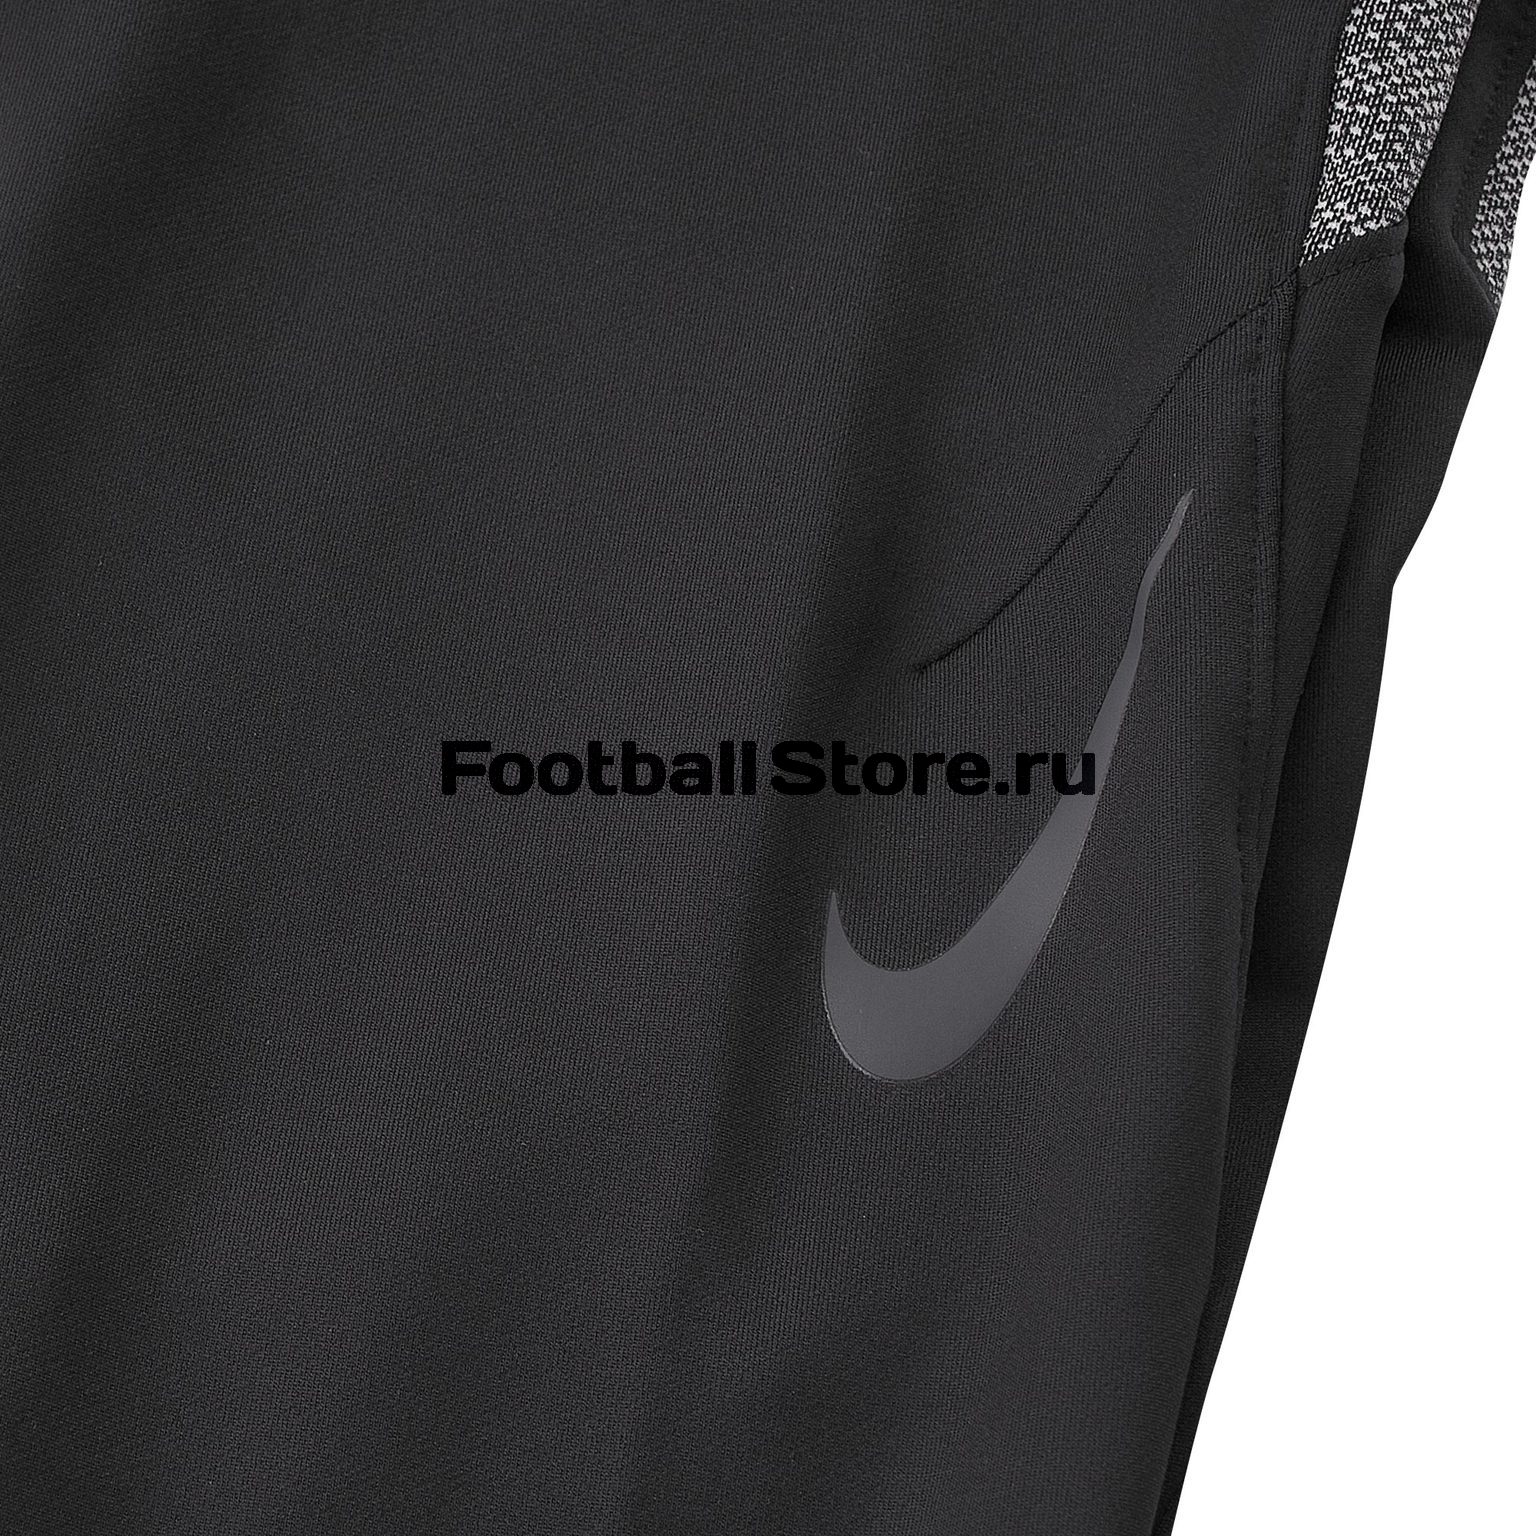 Брюки тренировочные Nike Dry Strike Pant AT5933-010